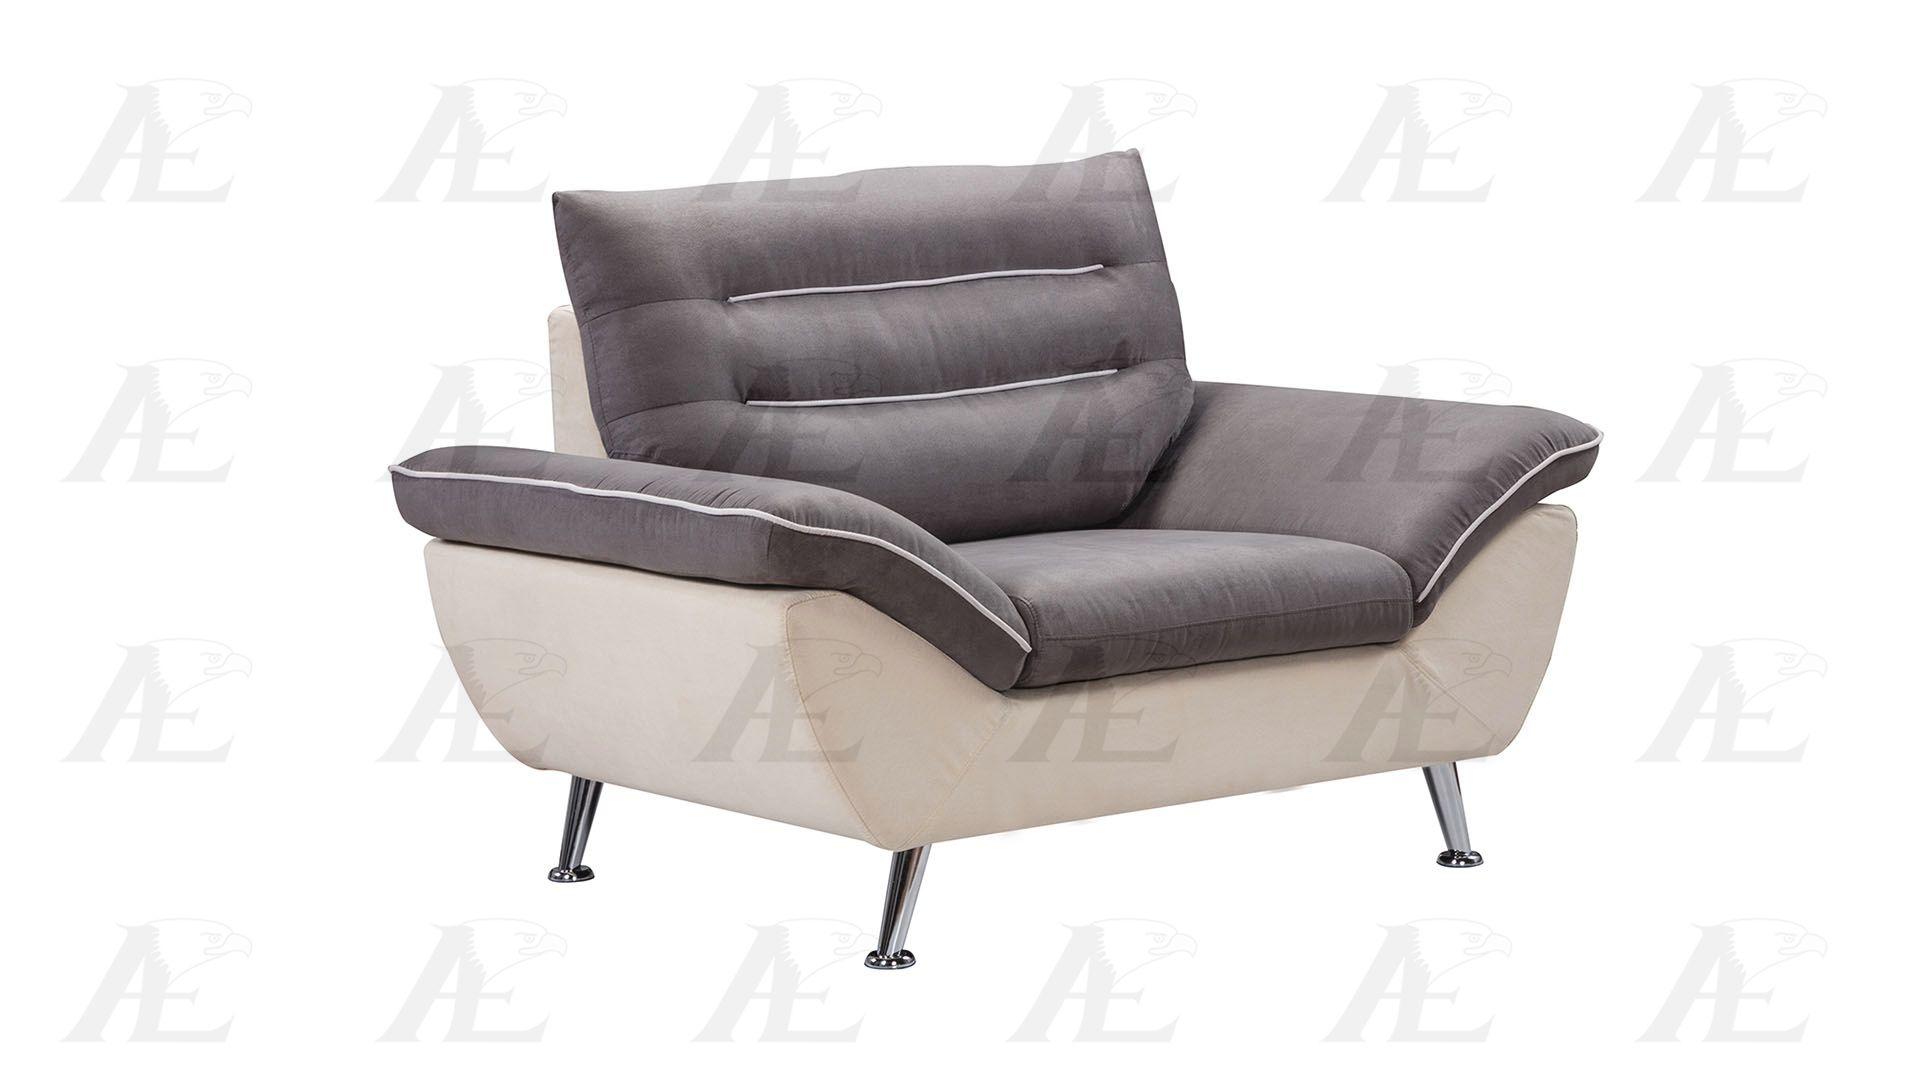 

    
AE-2365 American Eagle Furniture Sofa Set
